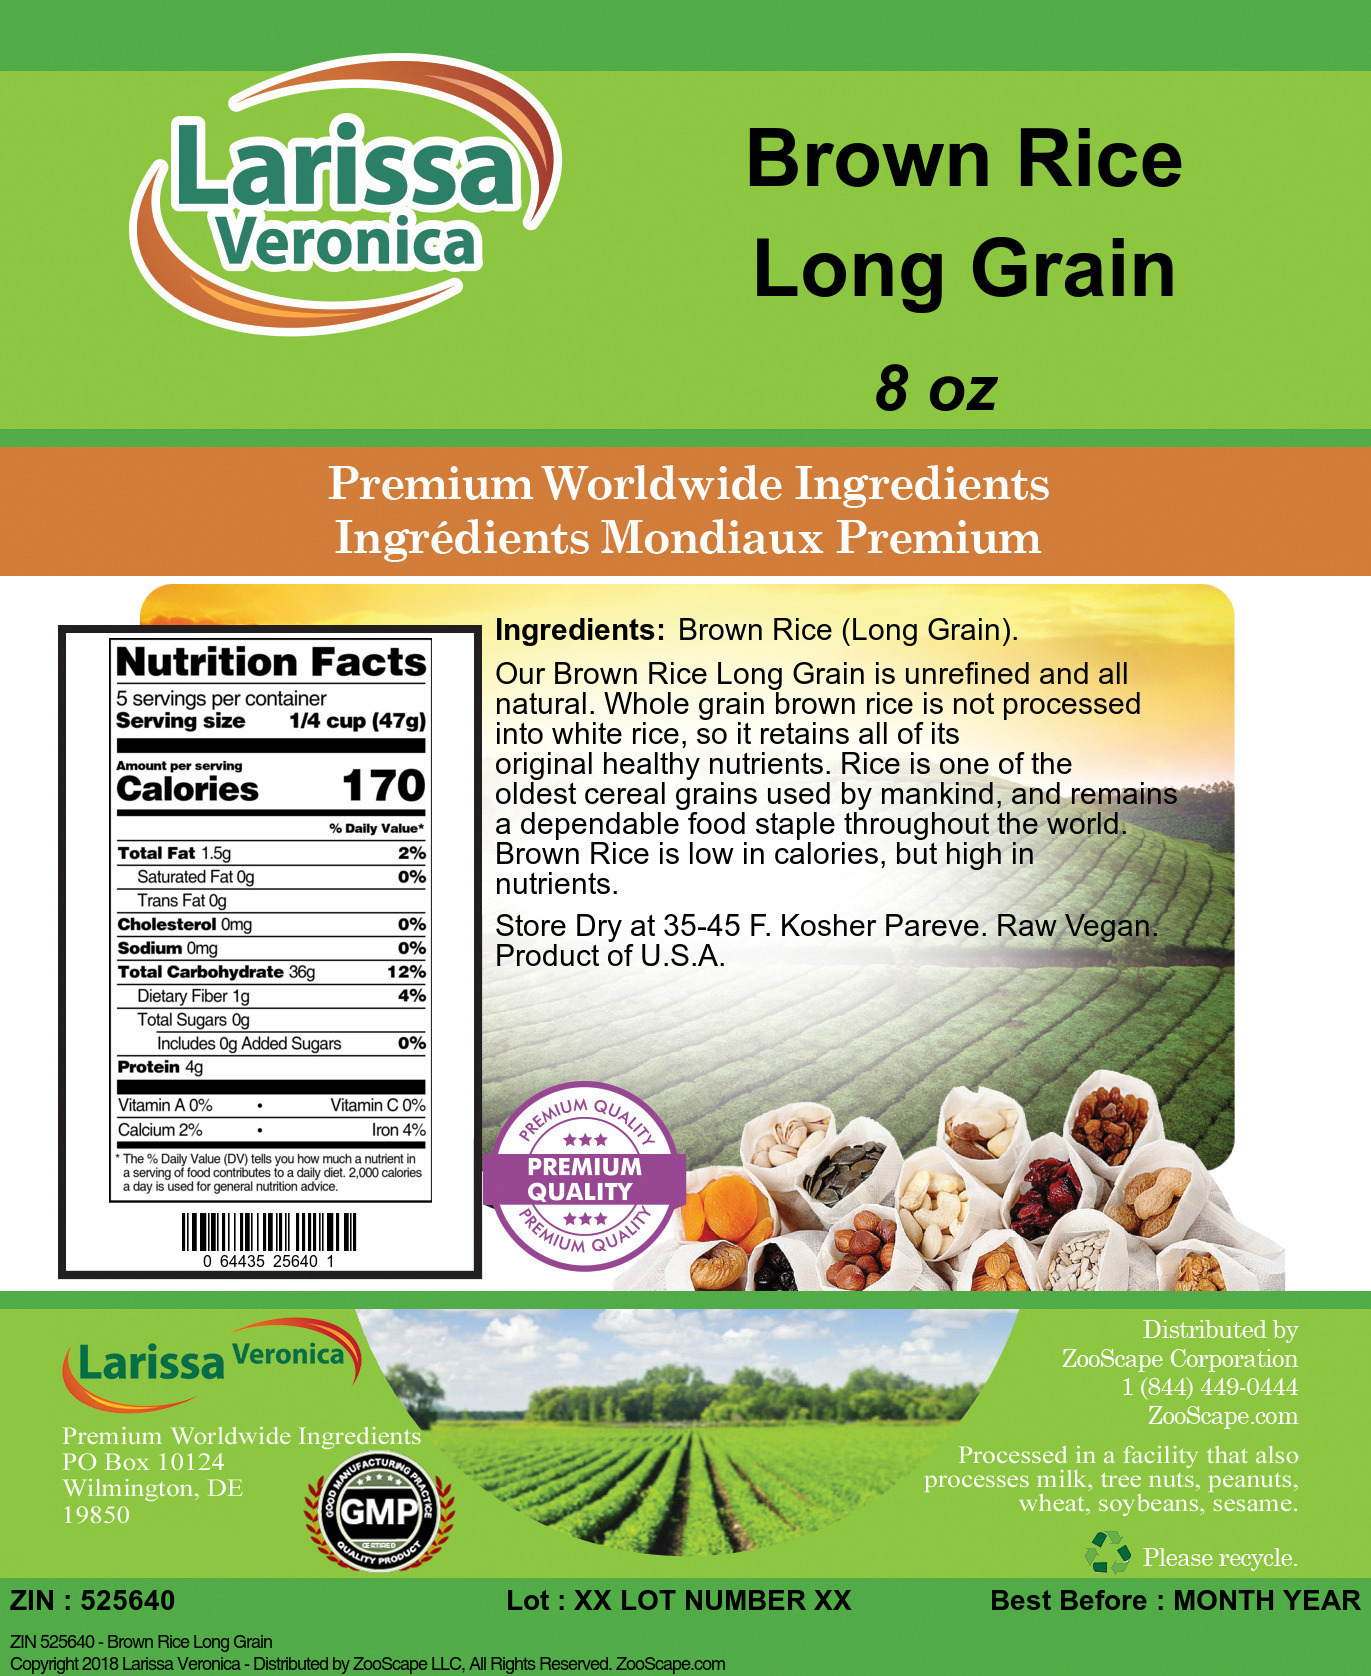 Brown Rice Long Grain - Label